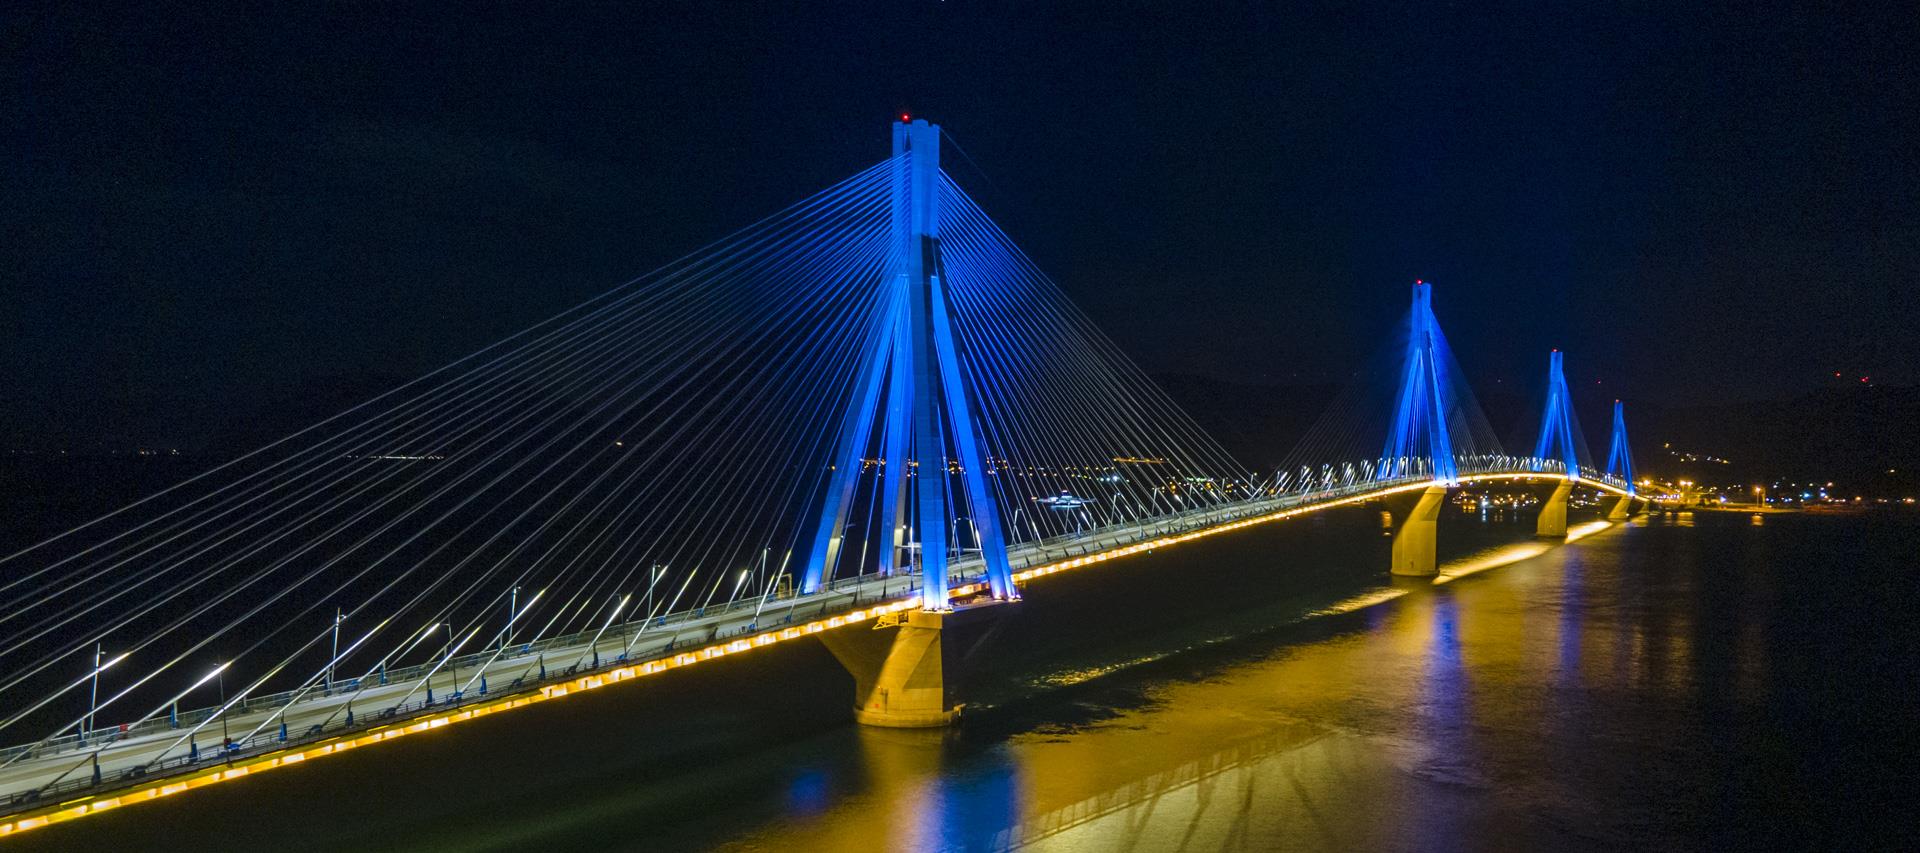 Γιατί φωταγωγείται απόψε η Γέφυρα Ρίου – Αντιρρίου